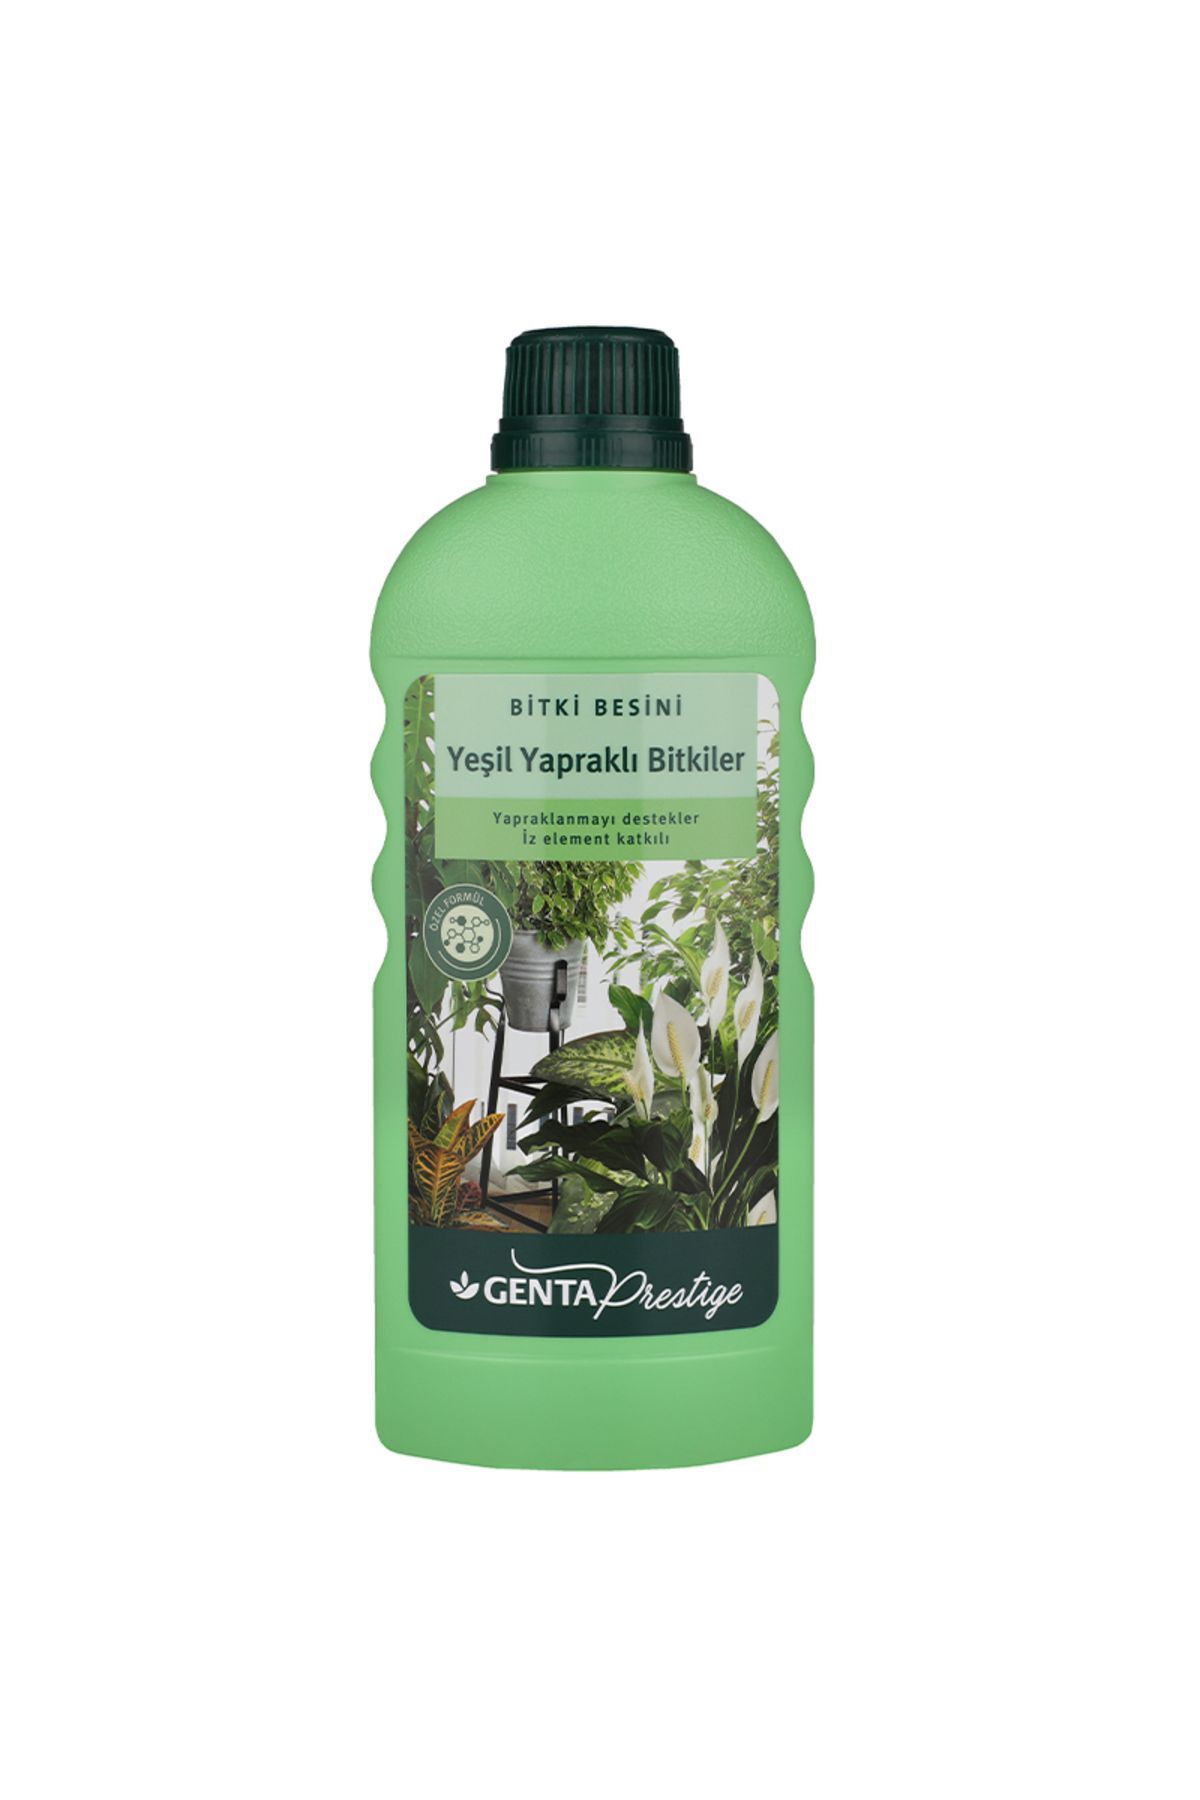 Genta Prestige Yeşil Yapraklı Bitkiler Için Sıvı Besin Sıvı Gübre 500 ml